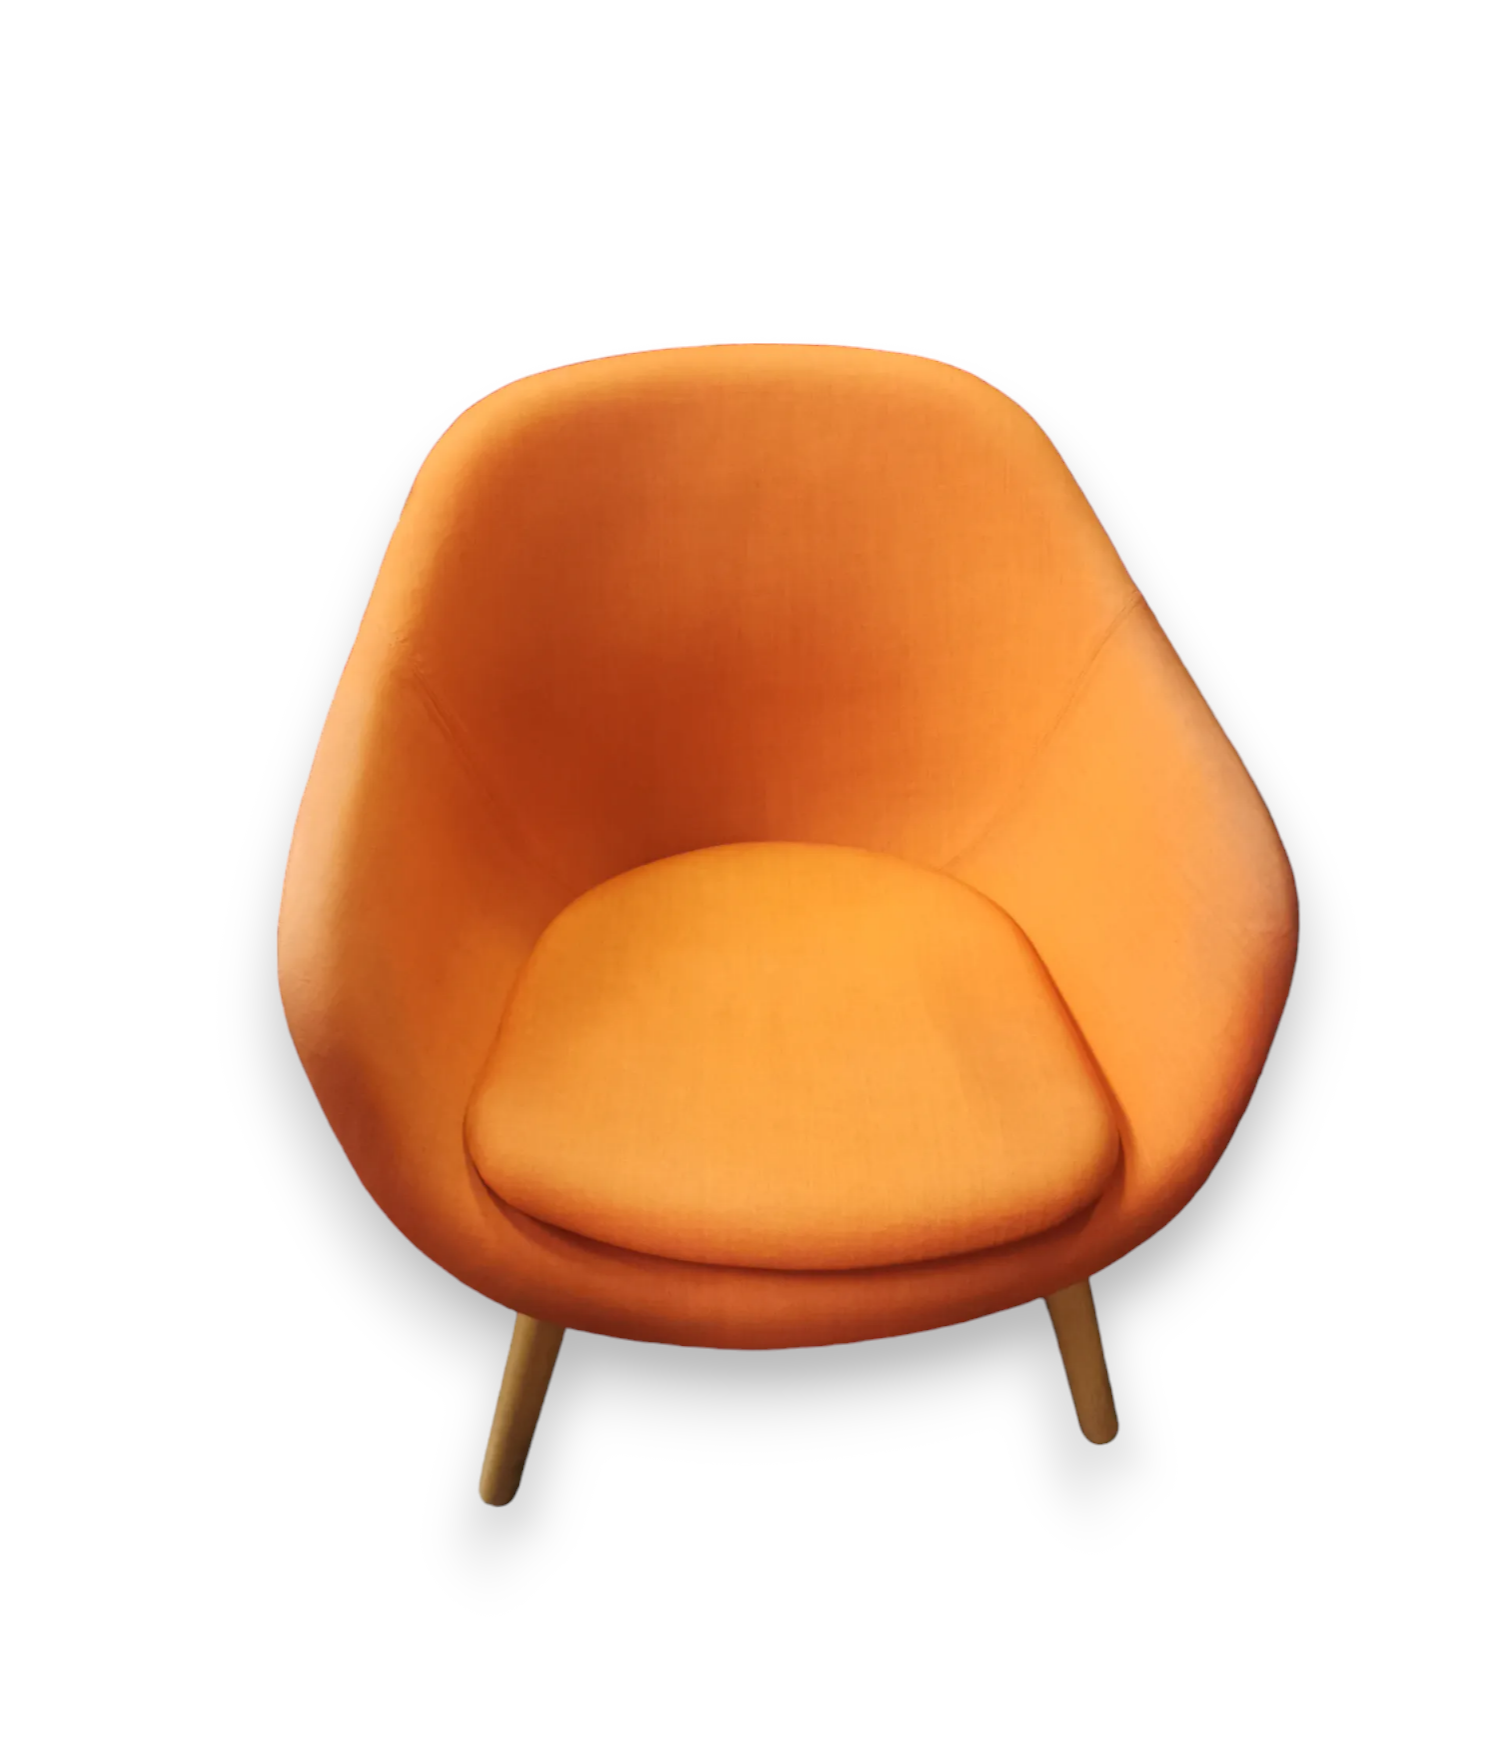 Fauteuil orange sur pieds en bois - Qualité de seconde main "Fauteuils et Canapés" - Relieve Furniture